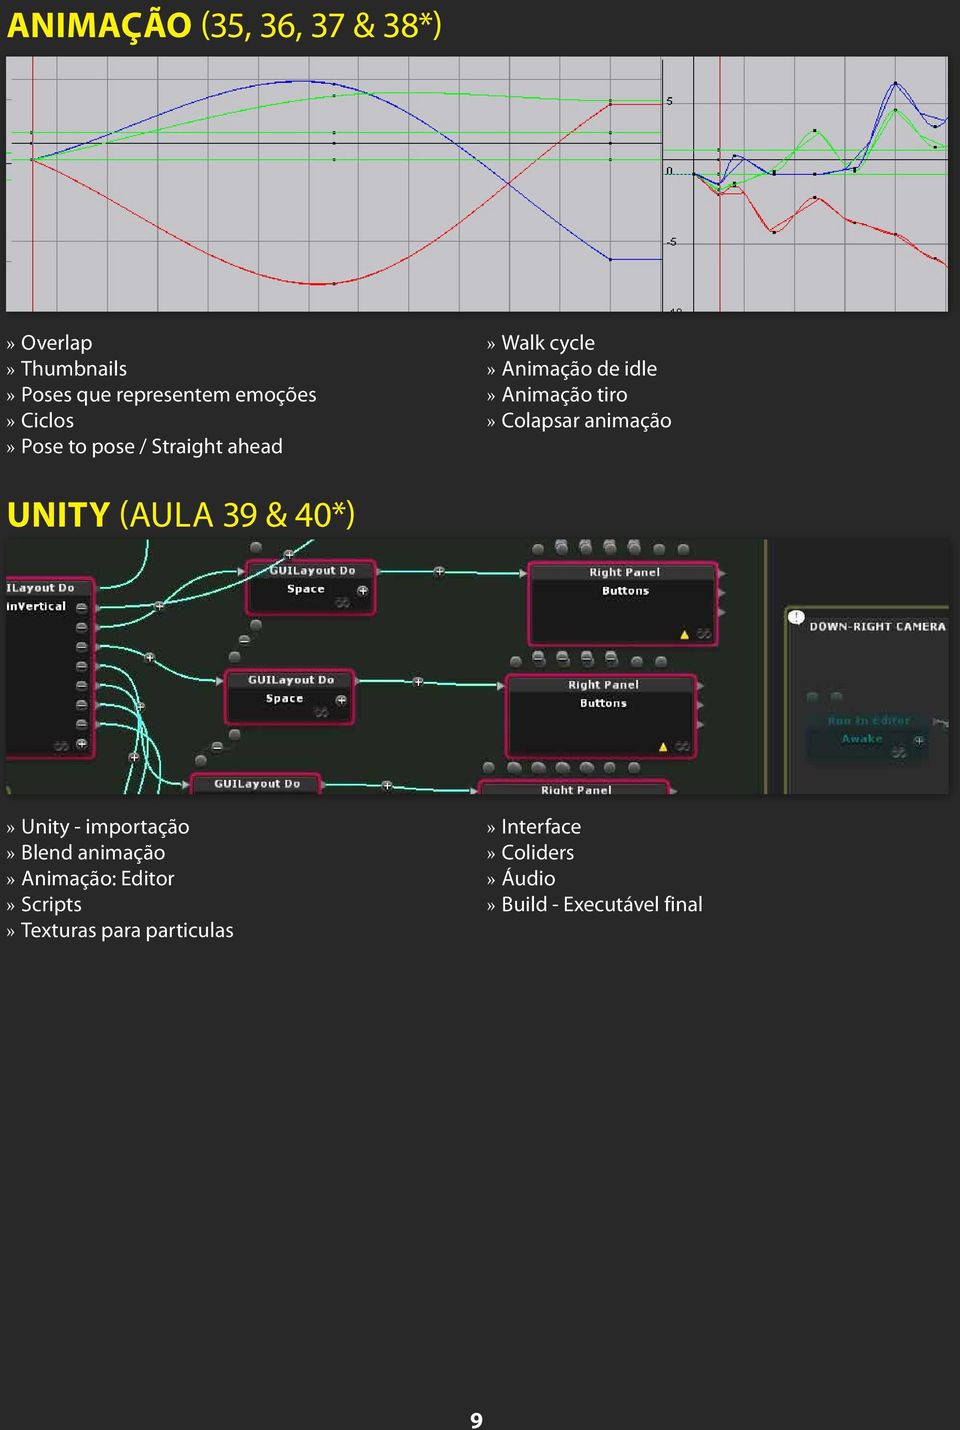 Colapsar animação UNITY (Aula 39 & 40*) Unity - importação Blend animação